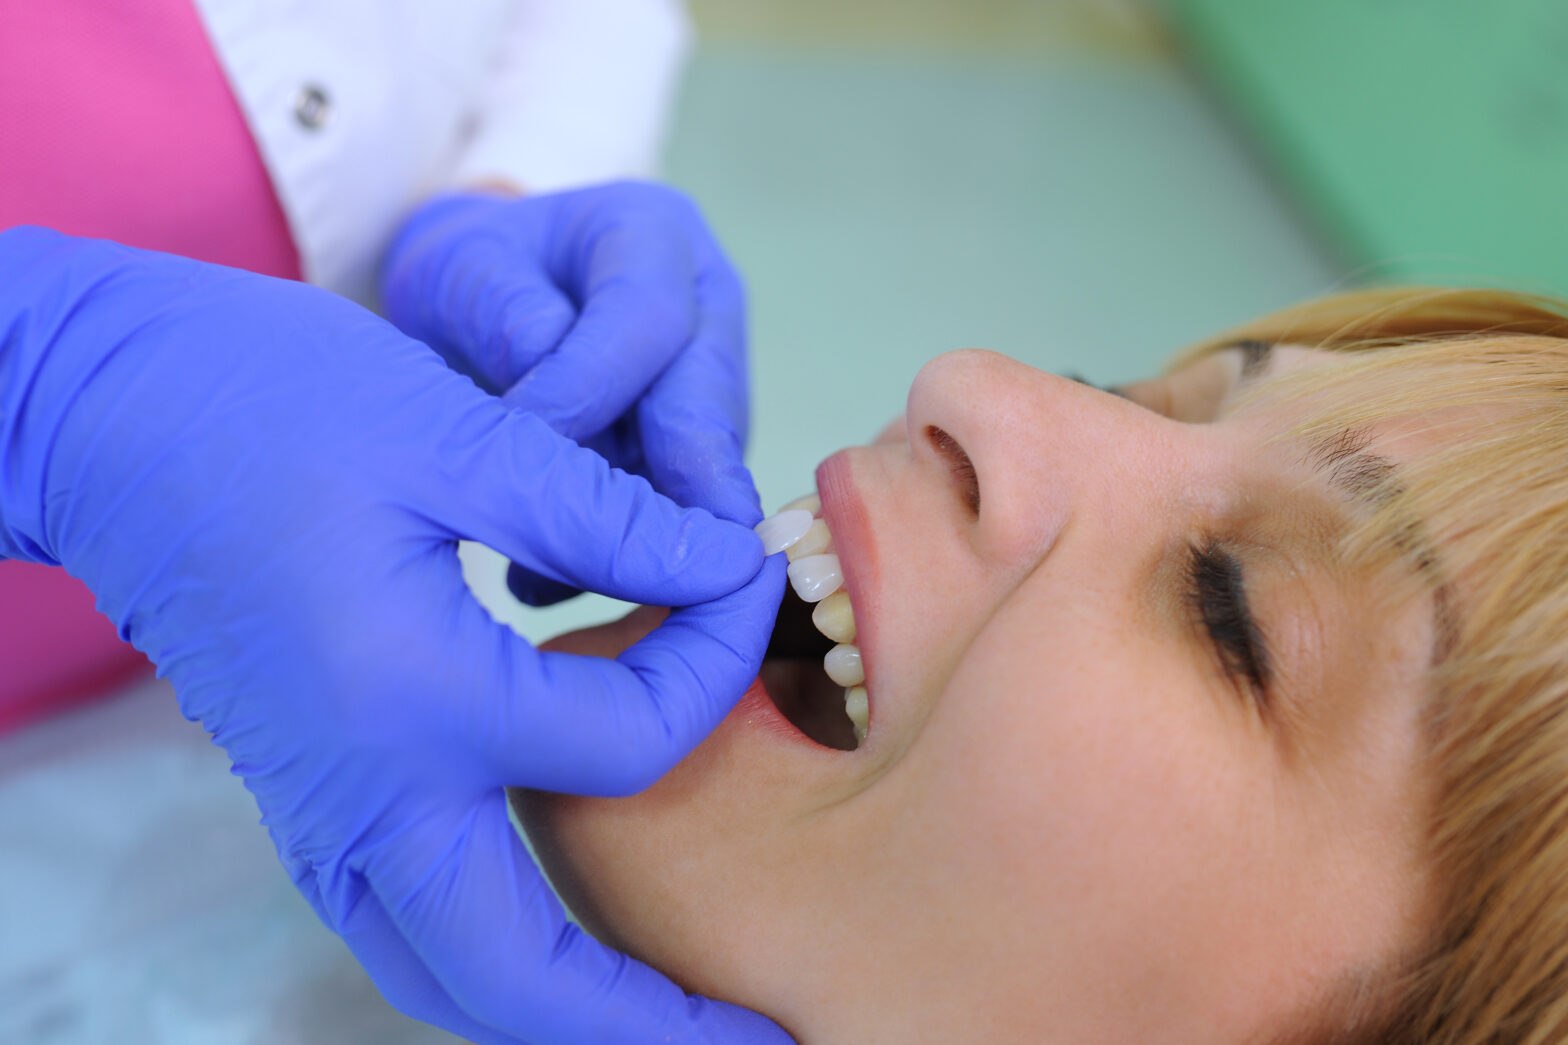 Veneers for Teeth Straightening: An Alternative to BracesGregory skeens d.d.s.encinitas family dentistry